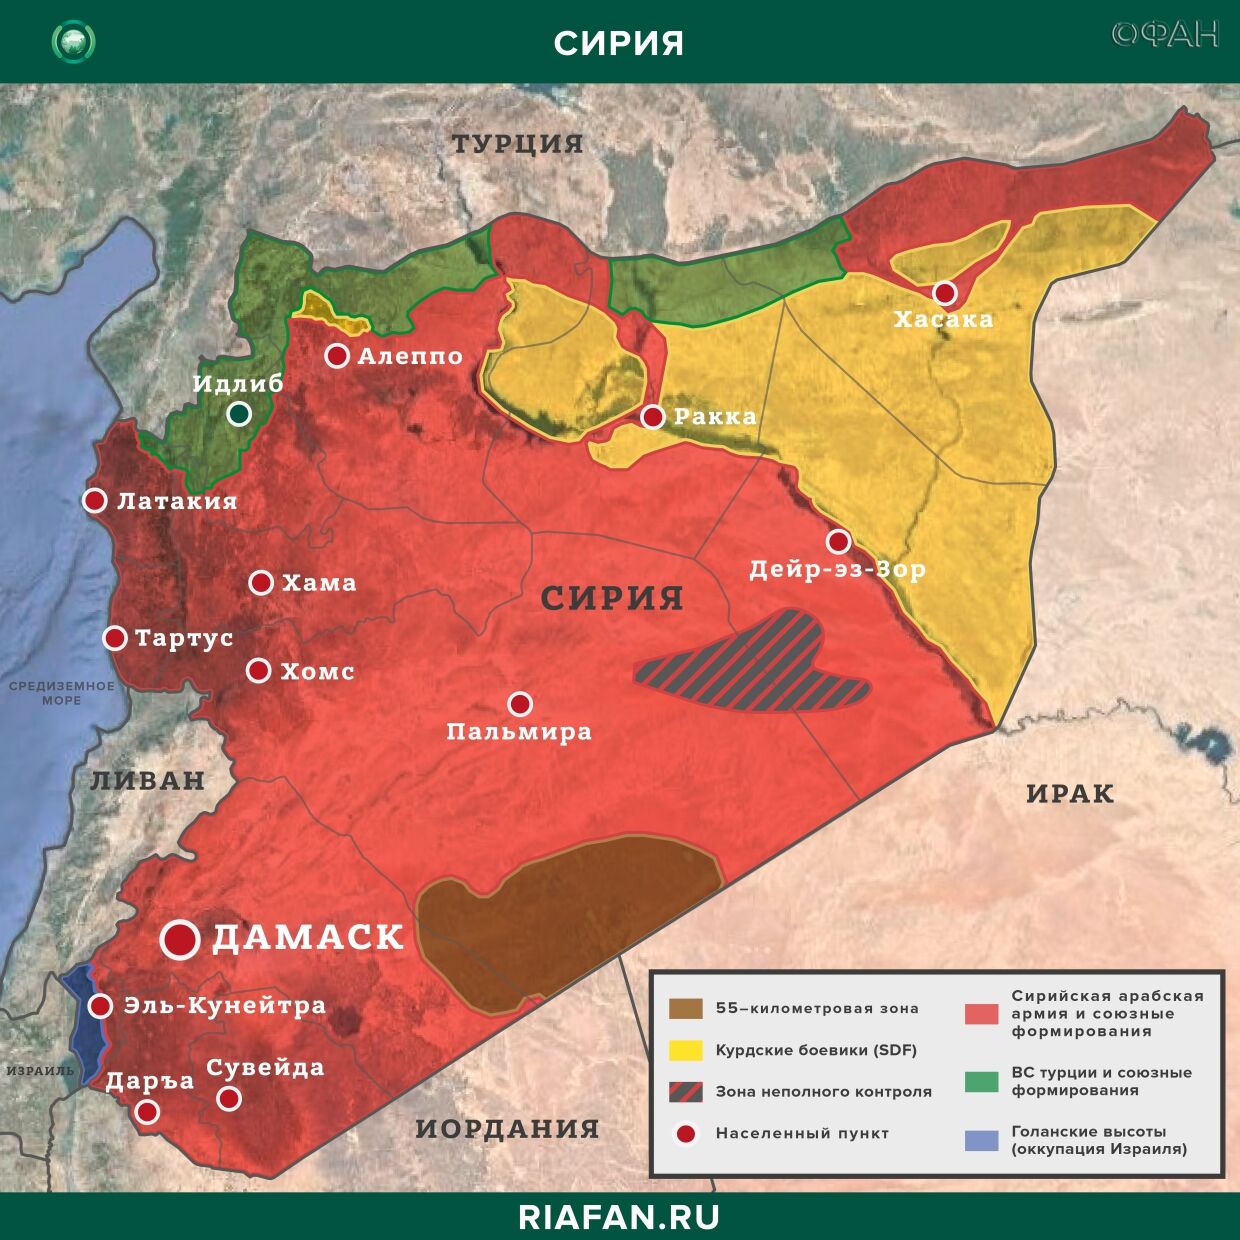 Nouvelles de Syrie 28 Peut 22.30: беспорядочная стрельба боевиков в Африне, Турция заявила о нейтрализации 3 членов РПК в Ираке